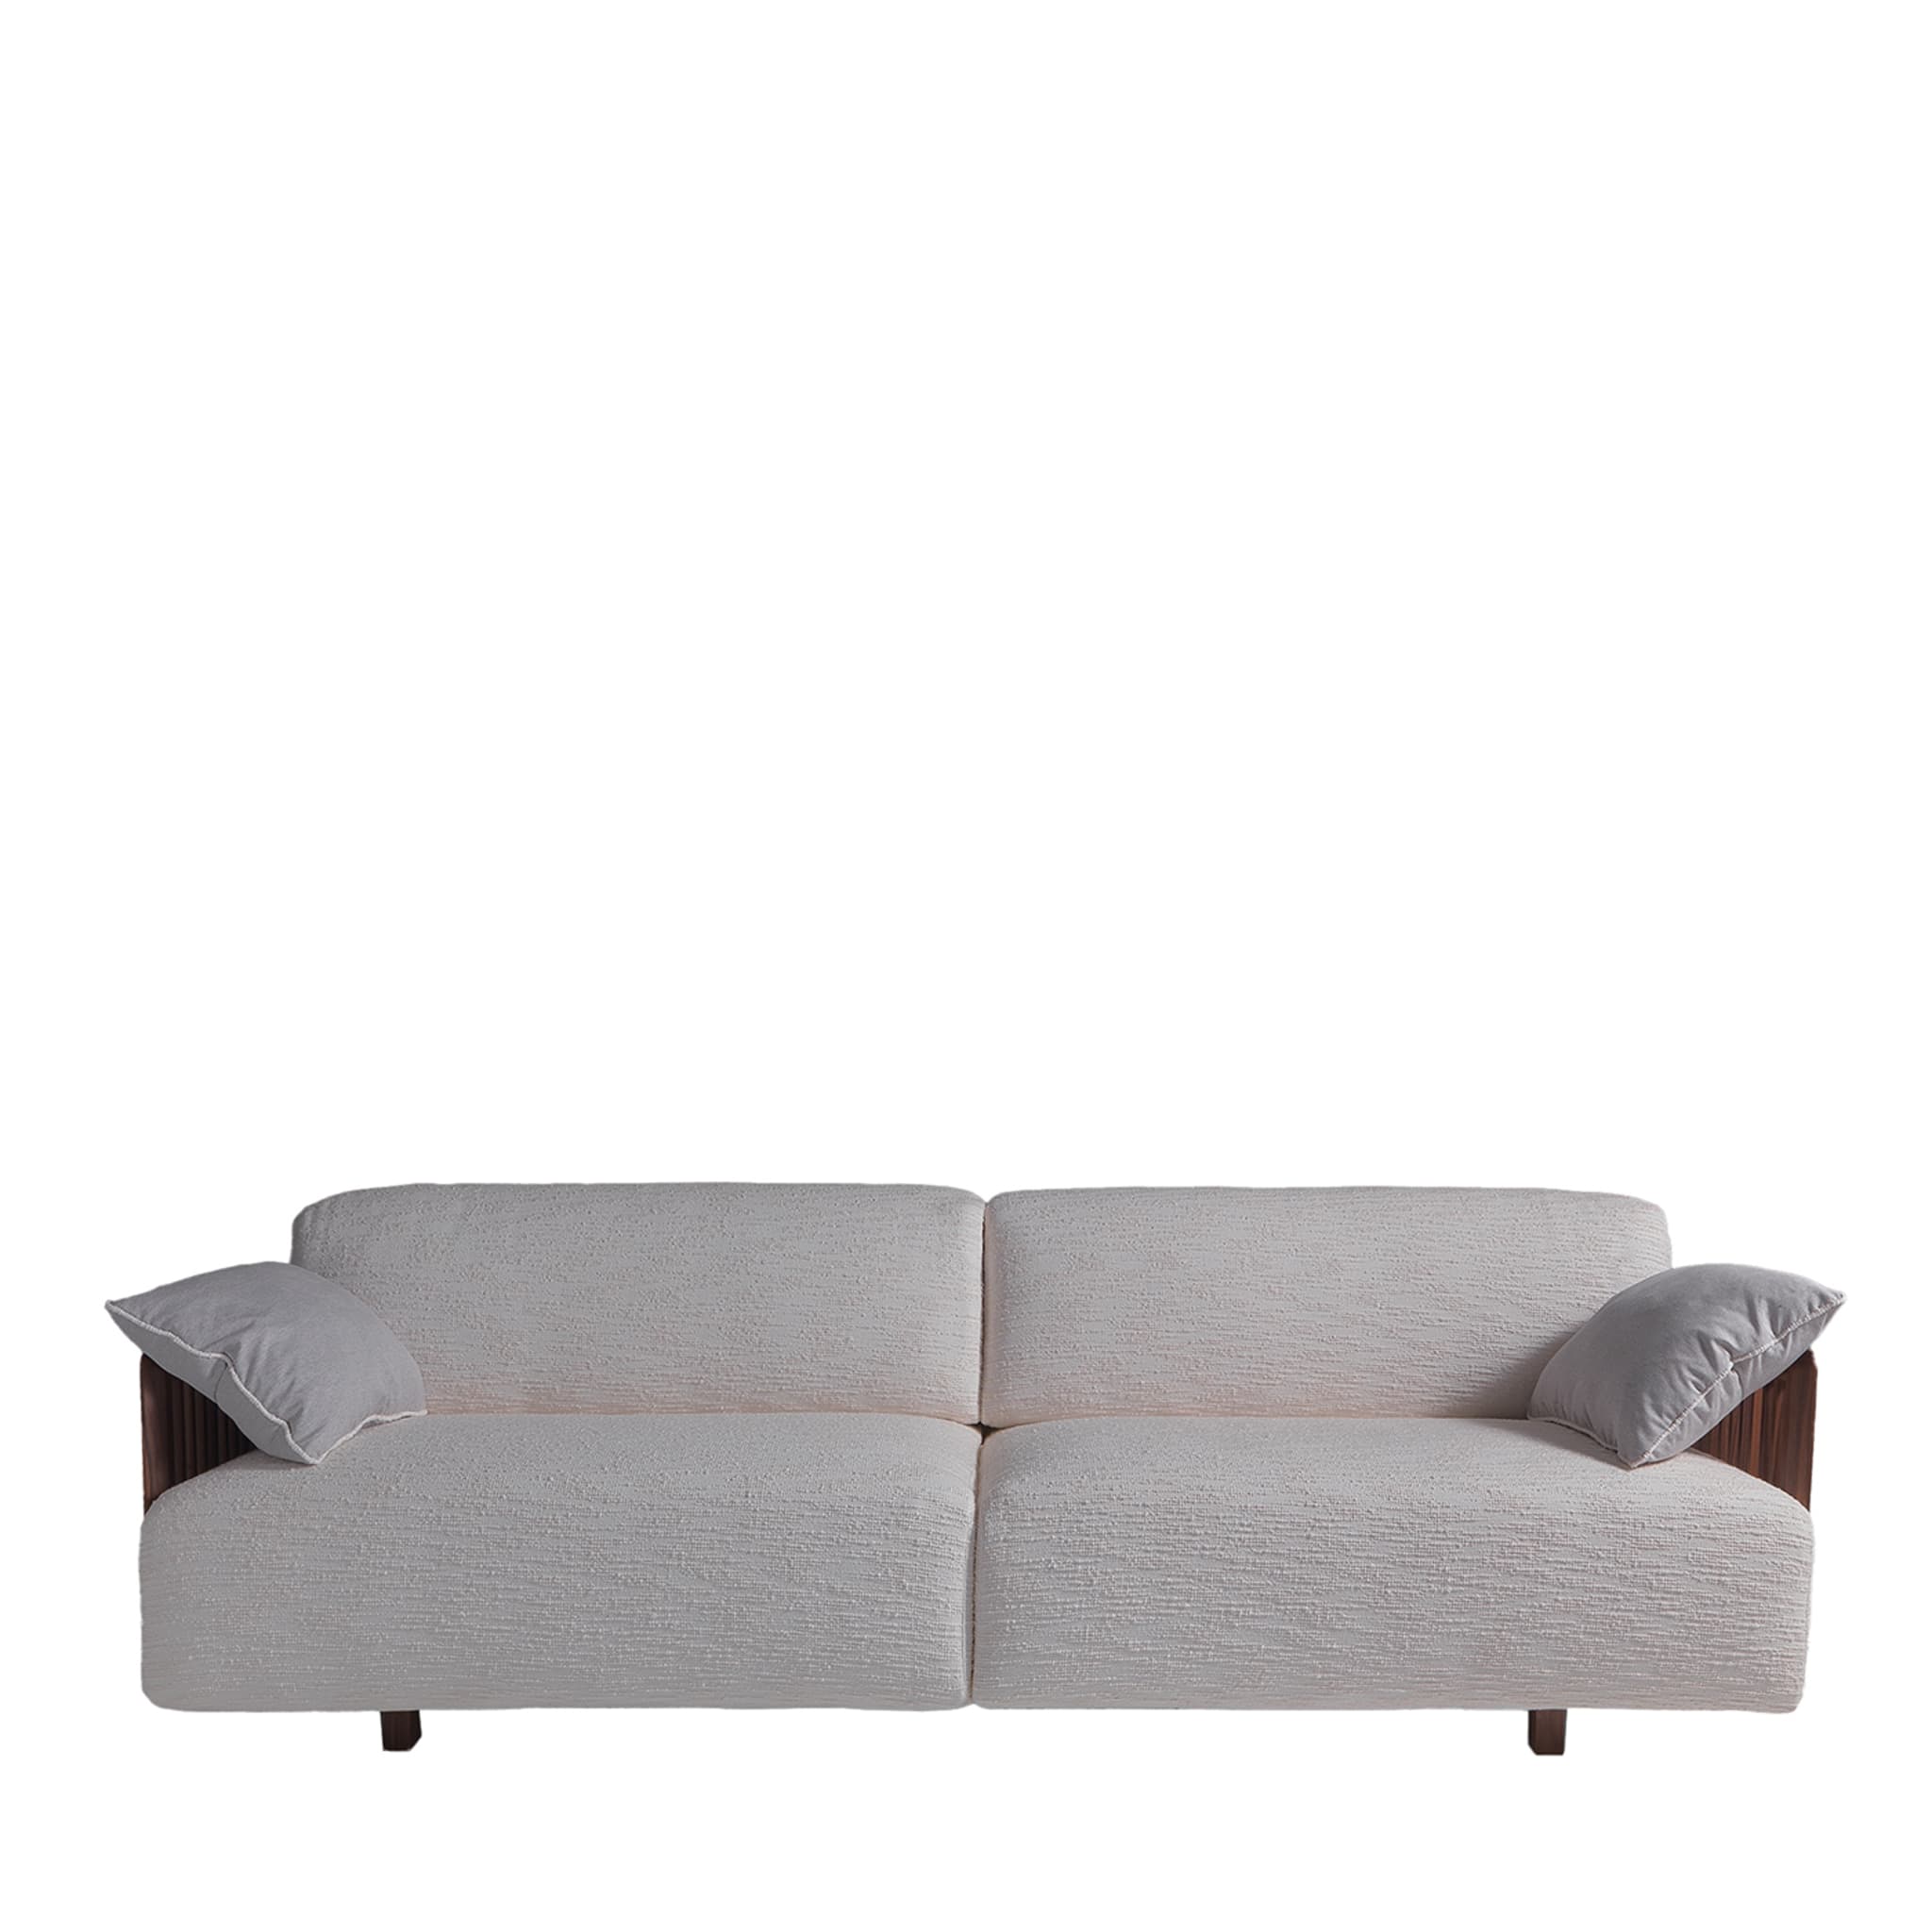 Leonardo White Sofa - Main view